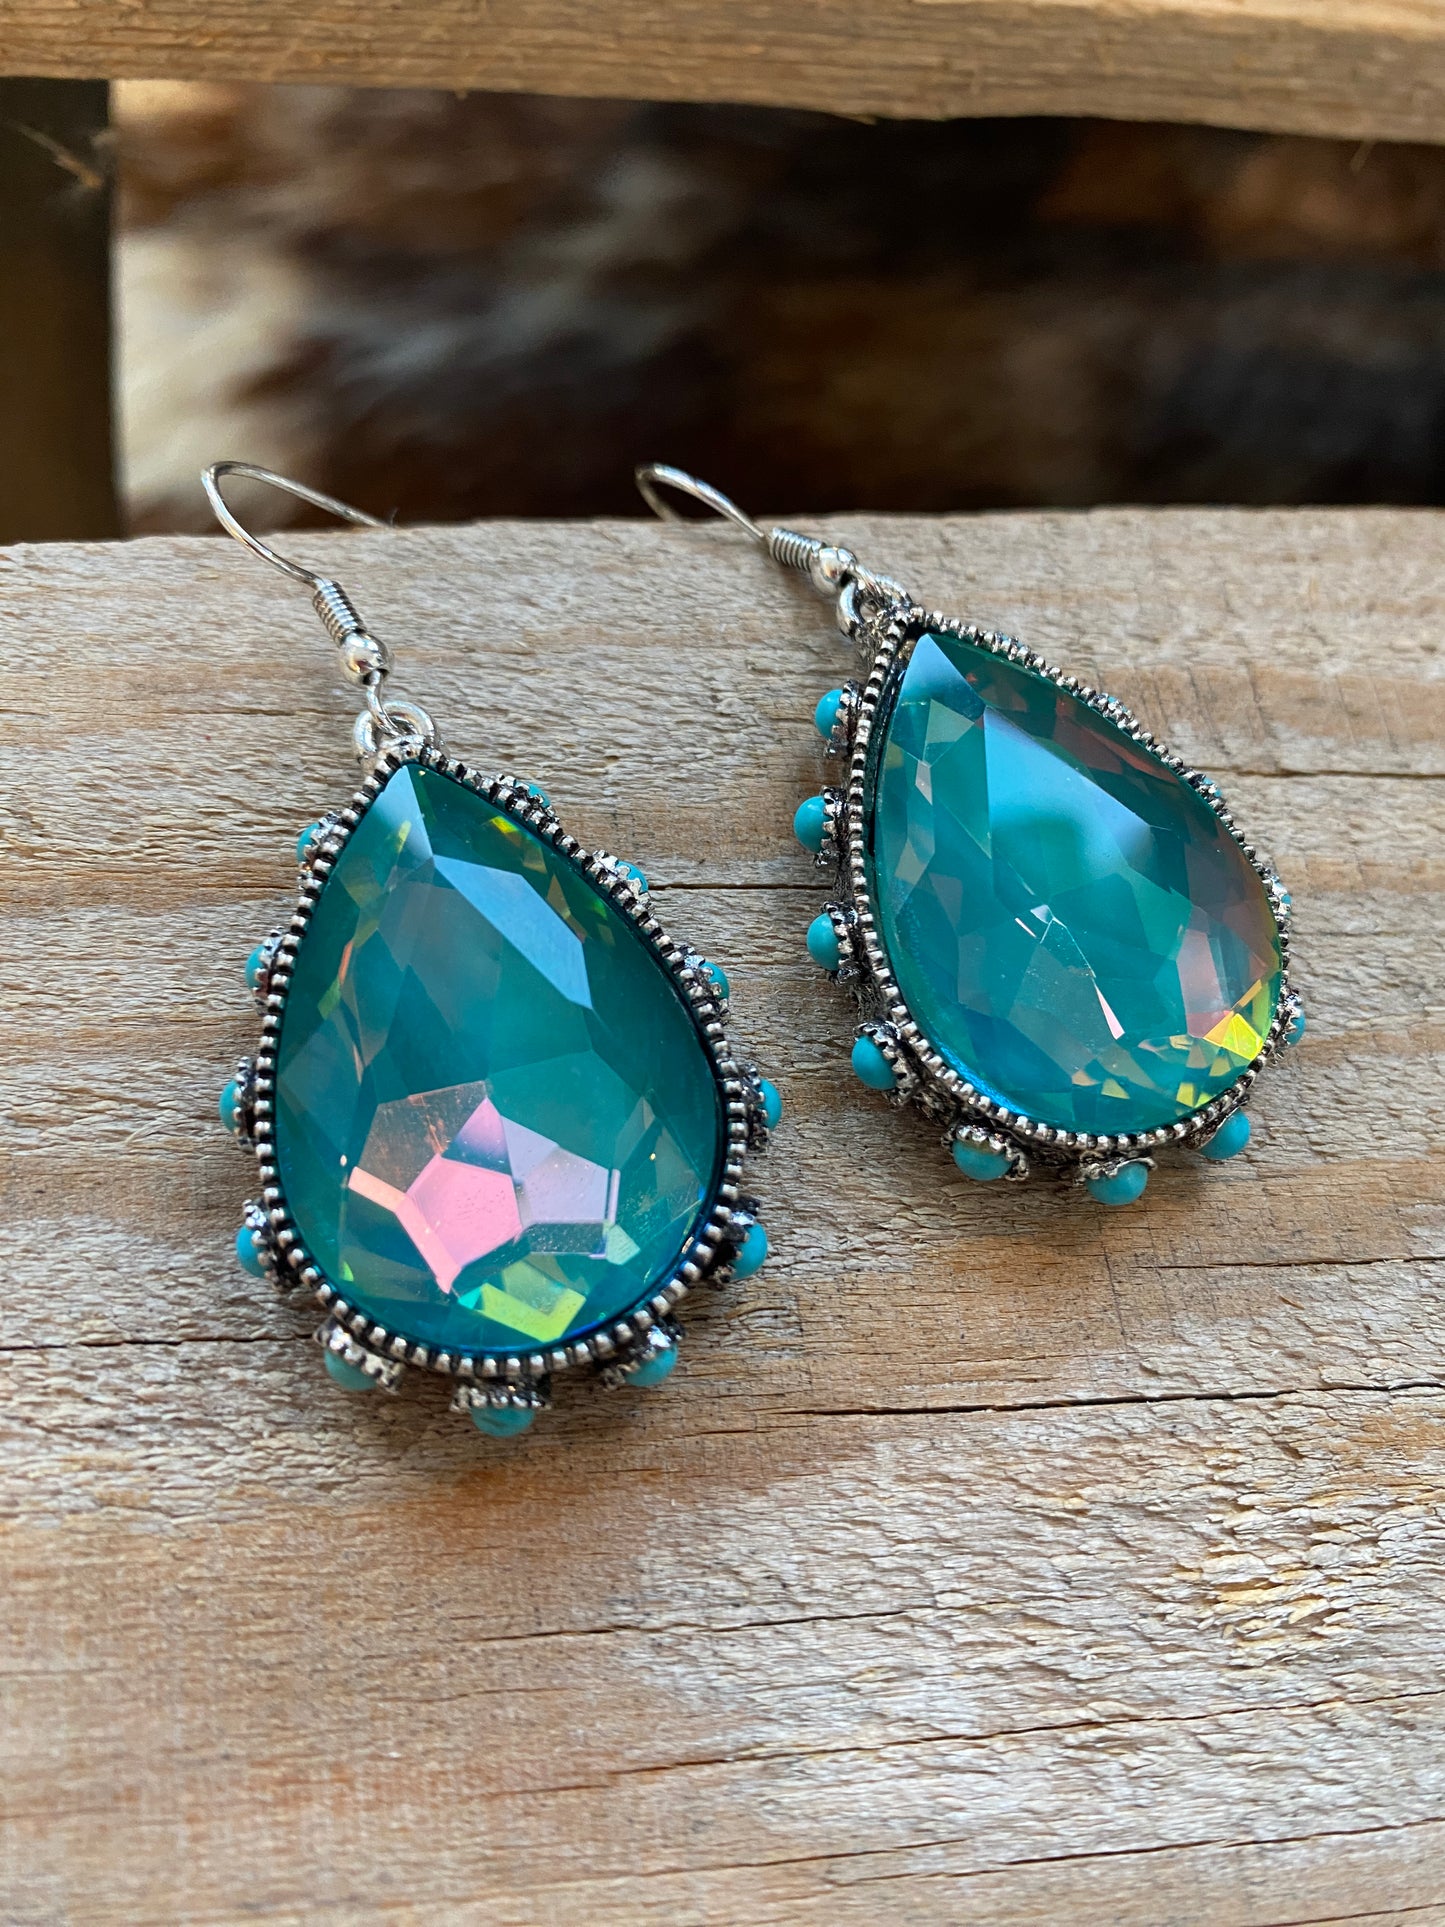 Tear drop earrings w/ turquoise stones